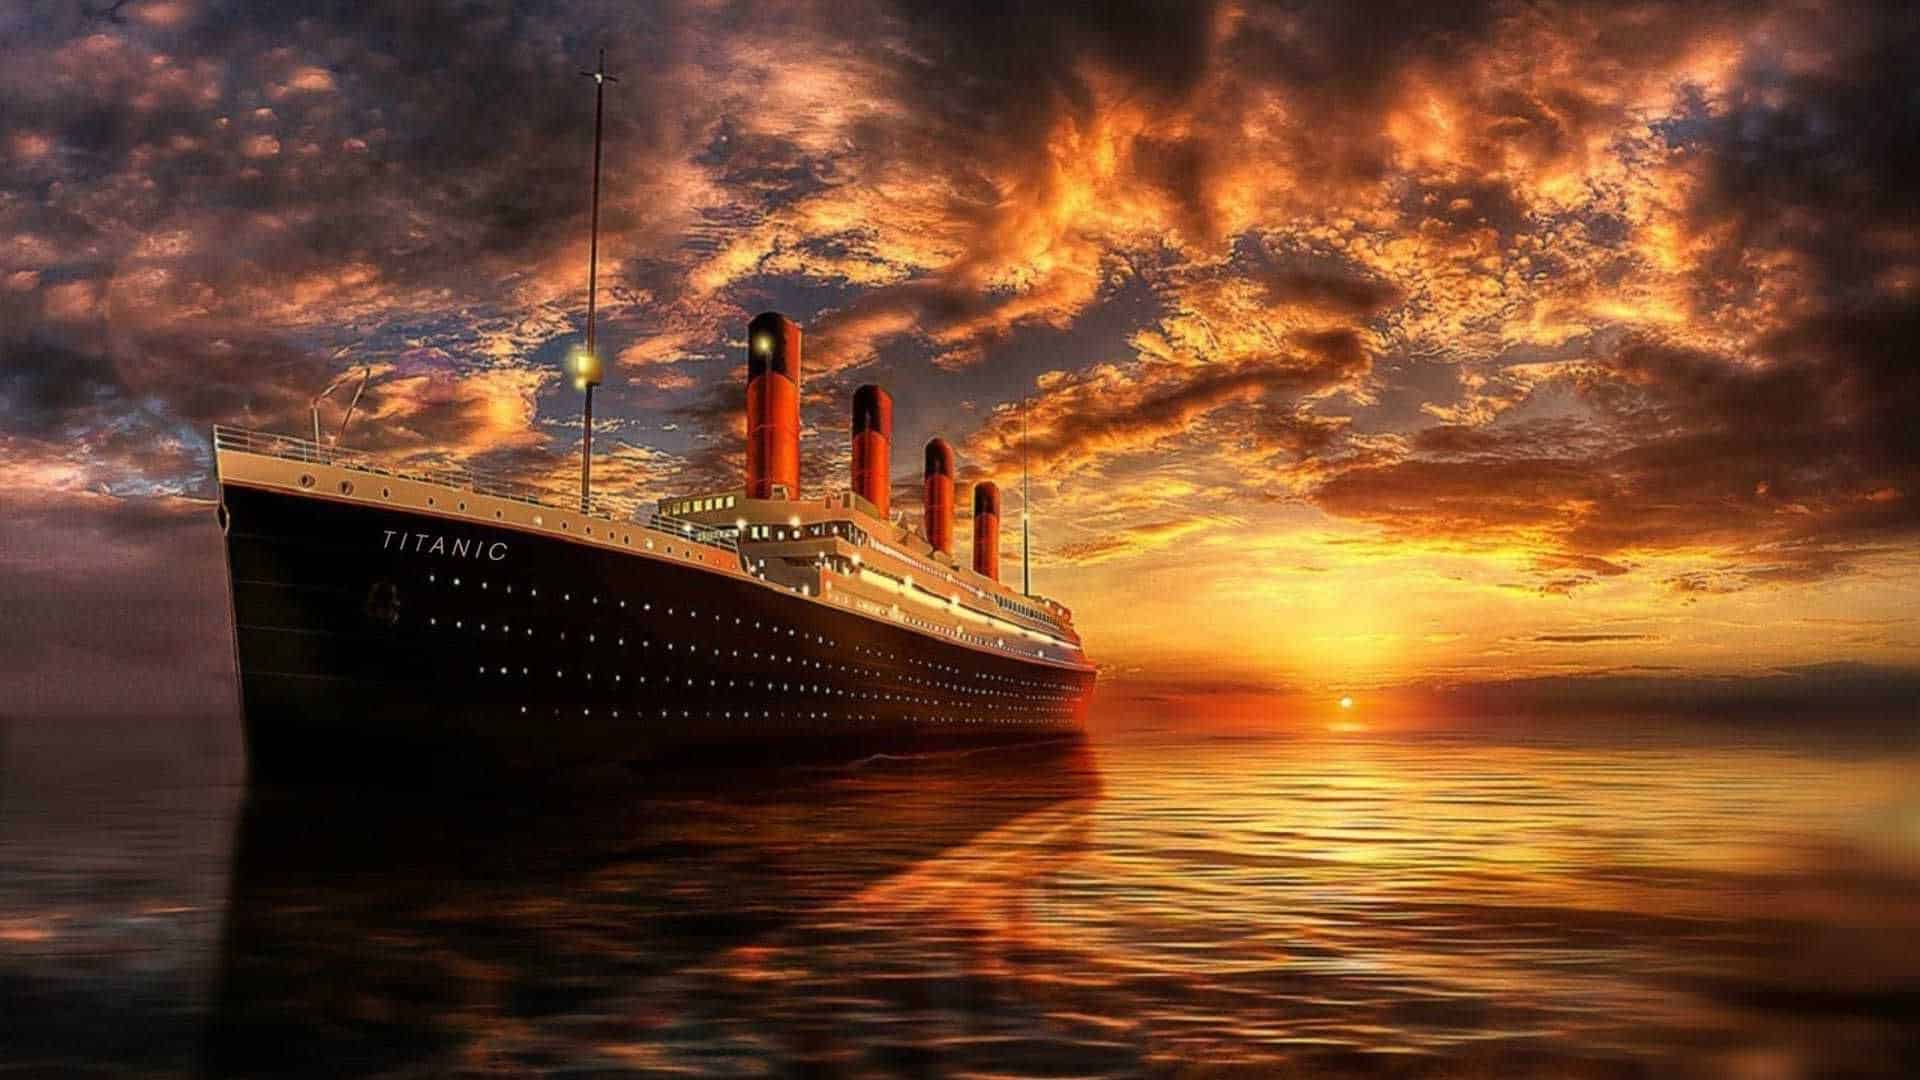 Τιτανικός: 102 χρόνια από την ιστορία του διασημότερου ναυαγίου στον κόσμο - Ποιος ήταν ο «πατέρας» του υπερωκεάνειου